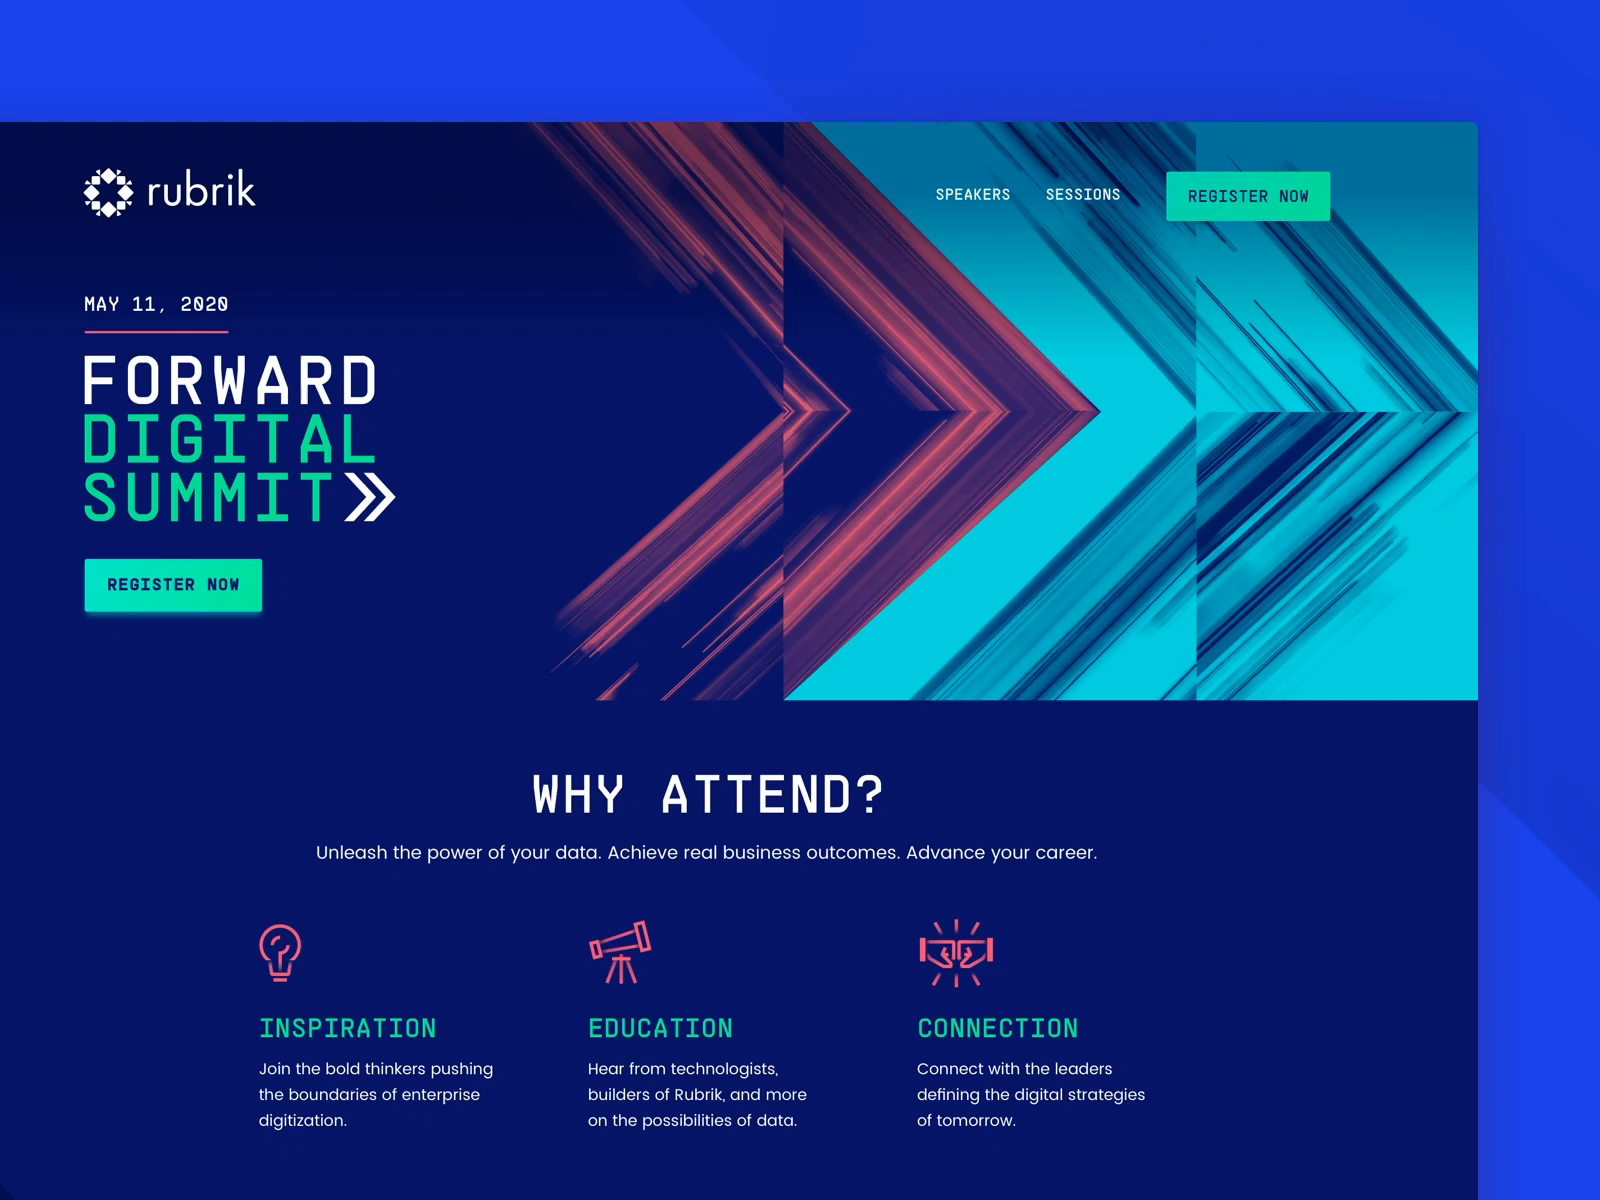 Rubrik Forward Digital Summit • HomePage by Pixelmatters on Dribbble